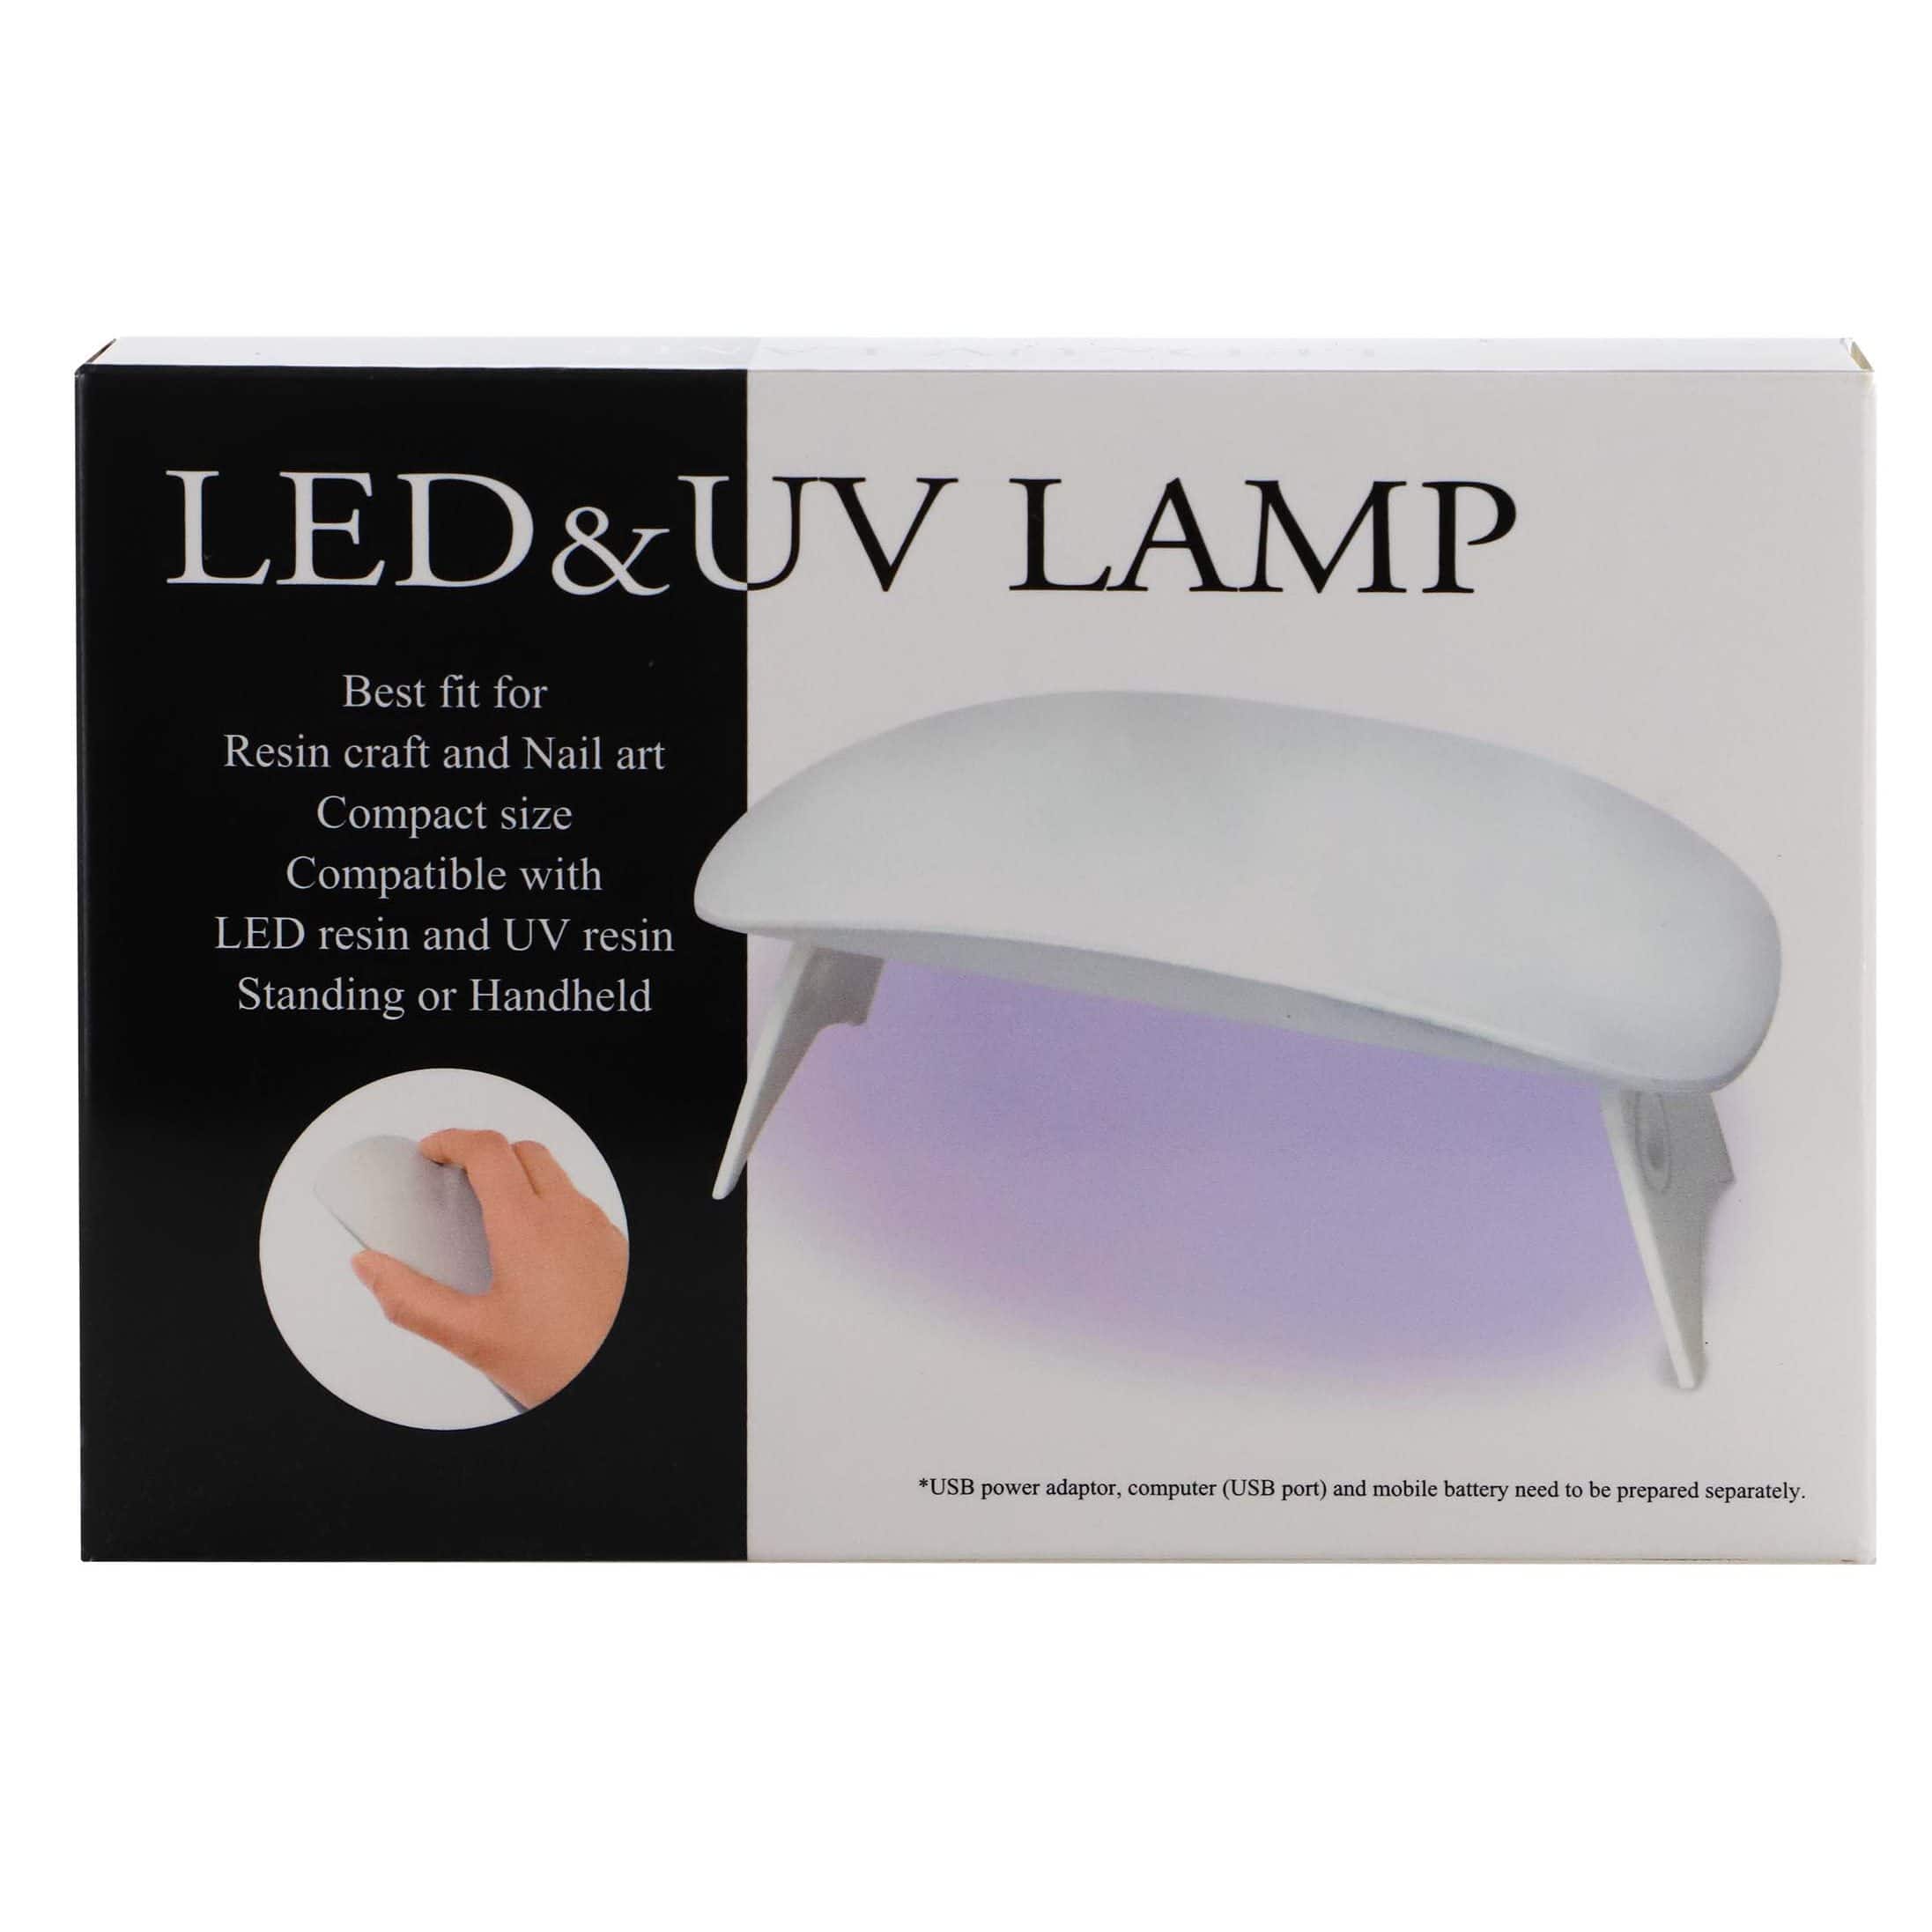 Resinate LED &#x26; UV Lamp